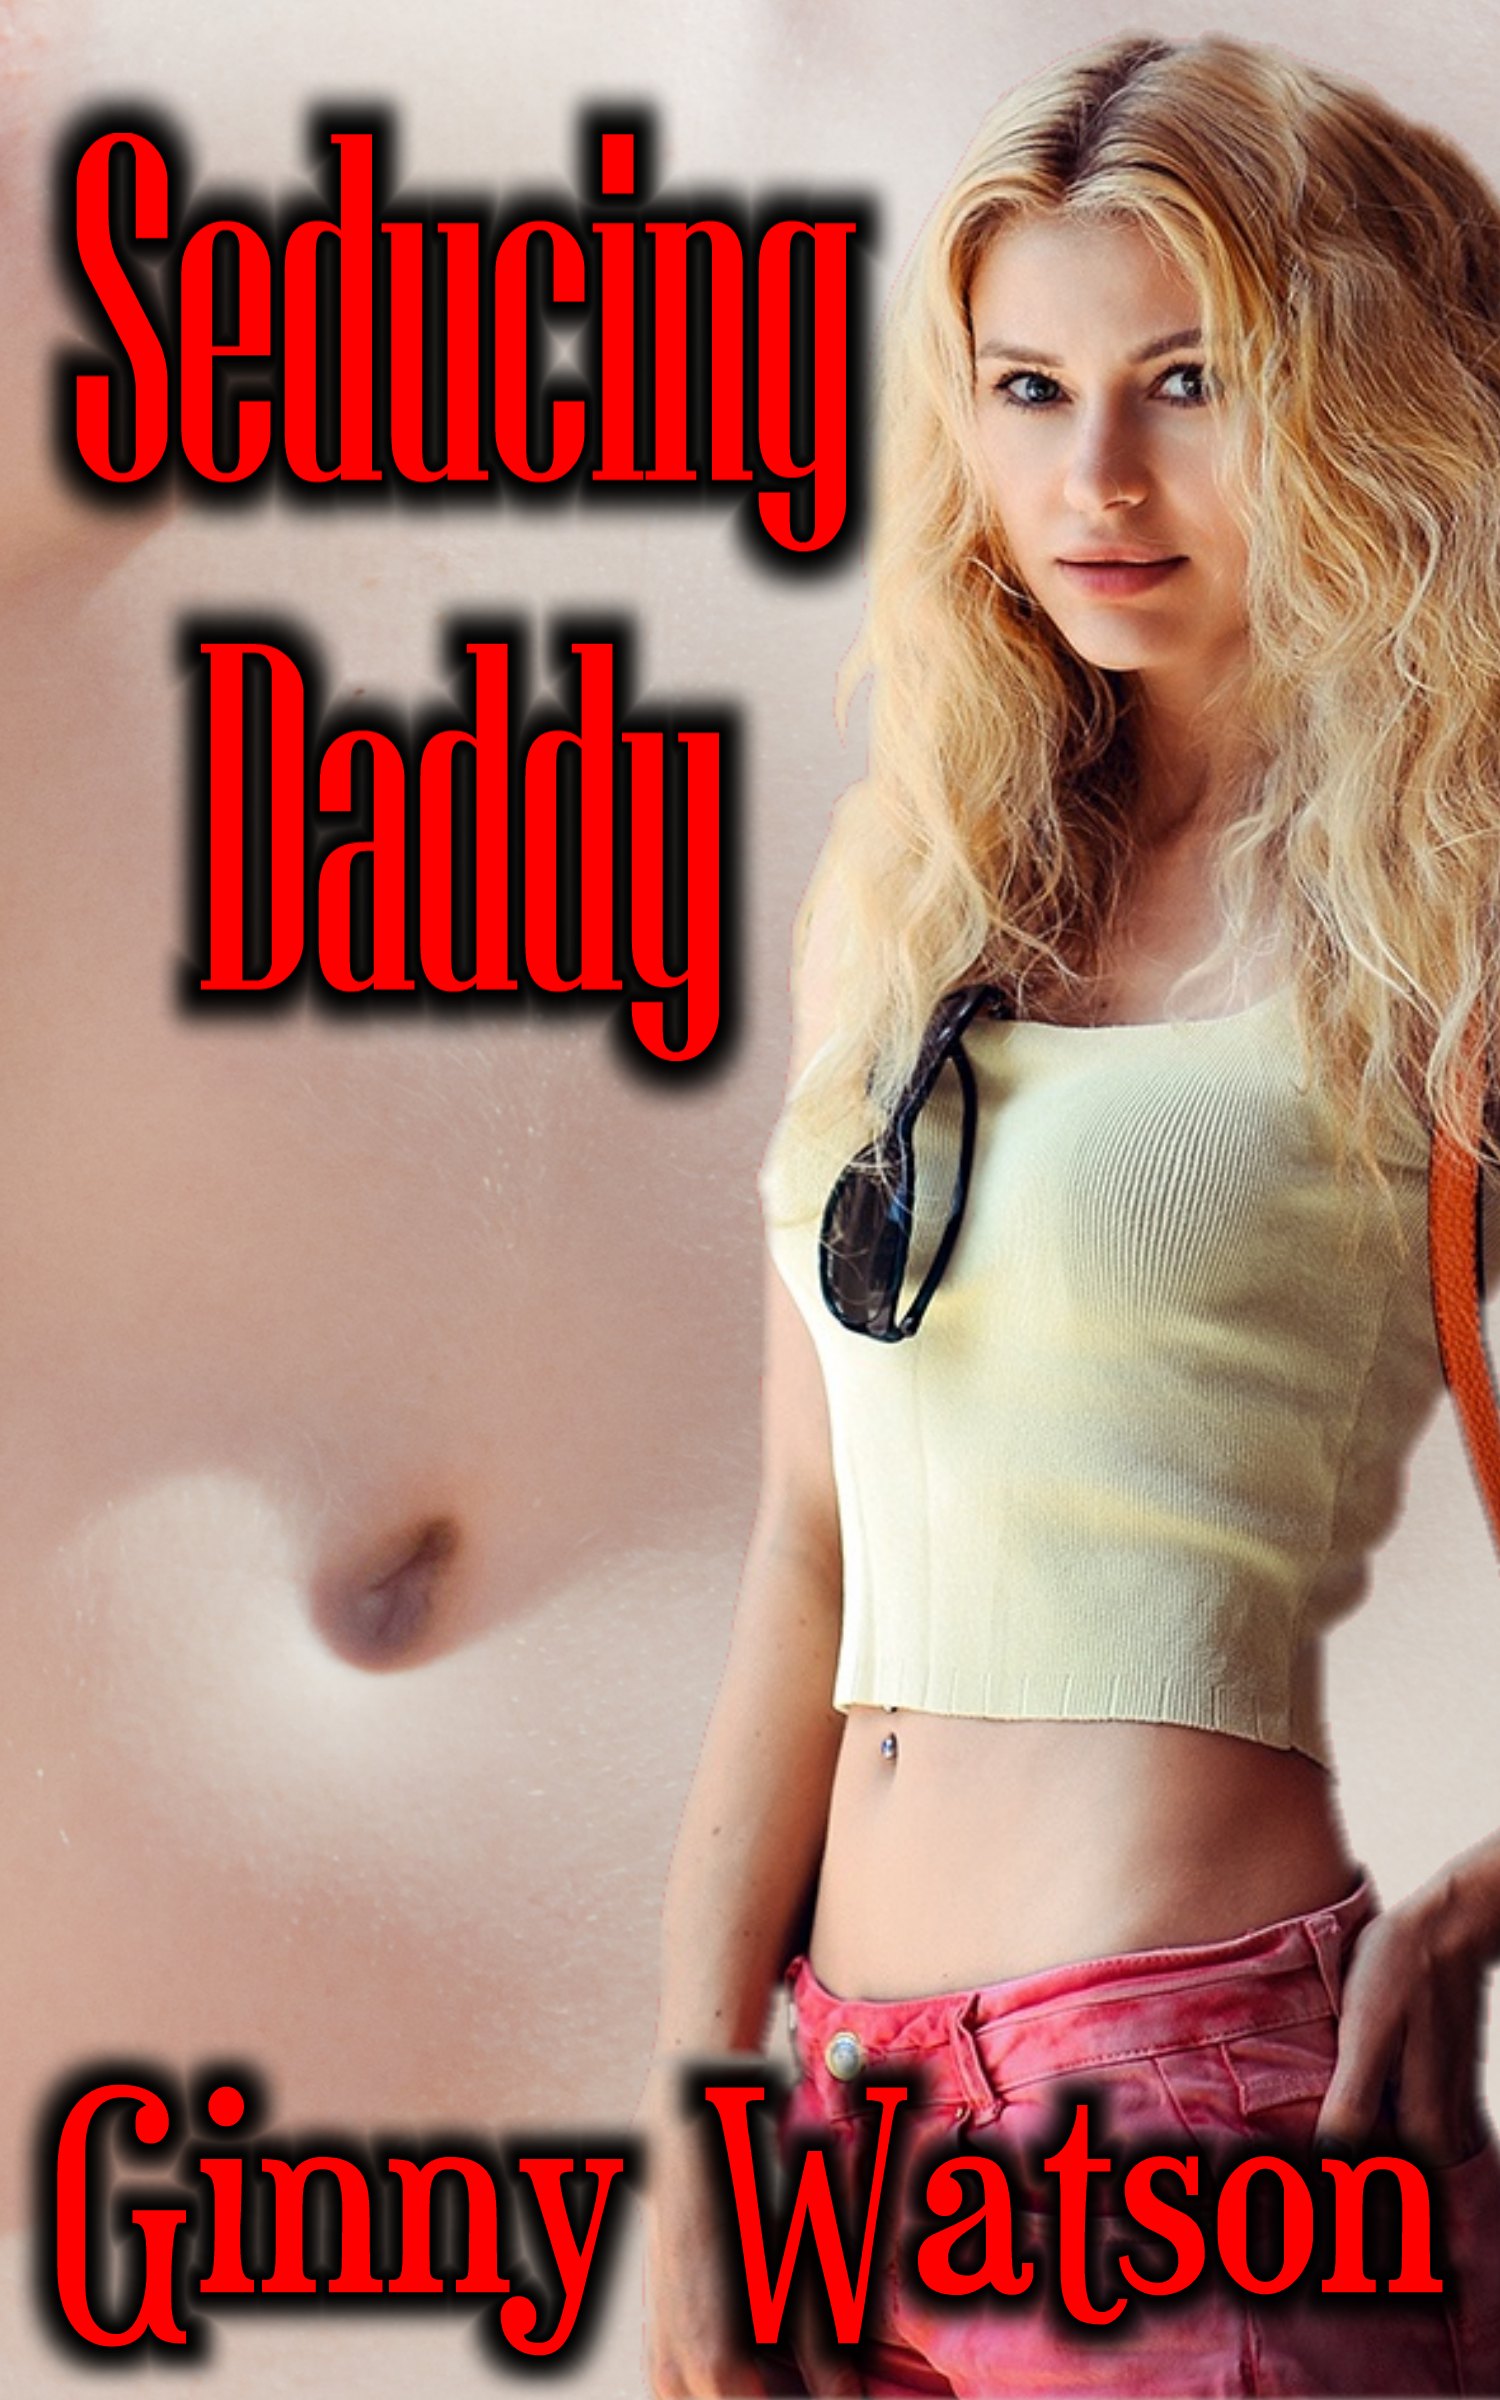 Seducing Daddy, an Ebook by Ginny Watson